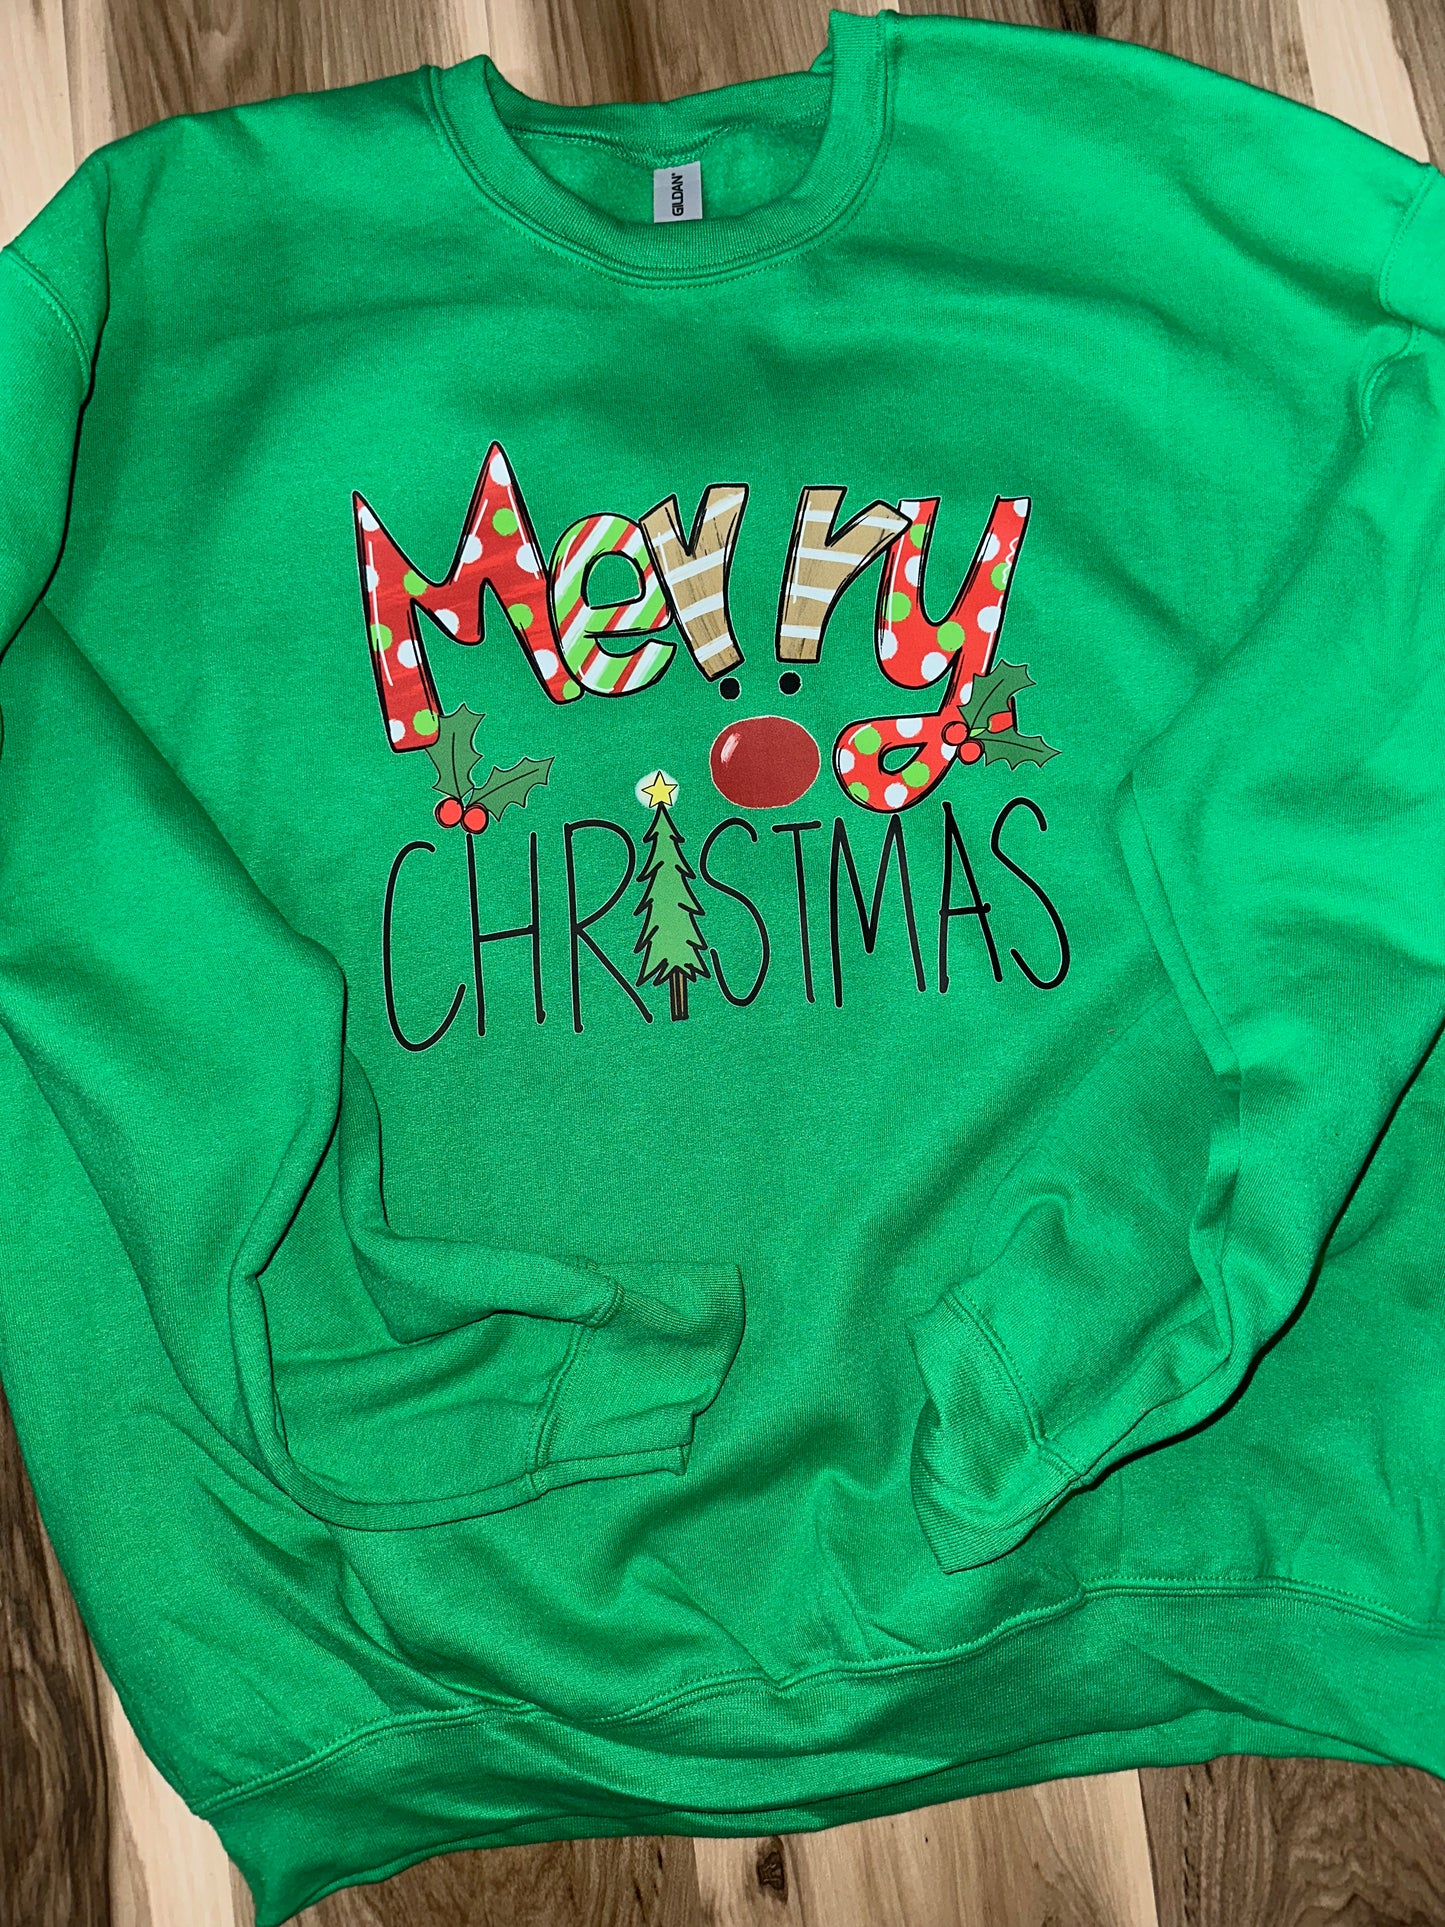 Merry Christmas (Green Crewneck Sweatshirt)